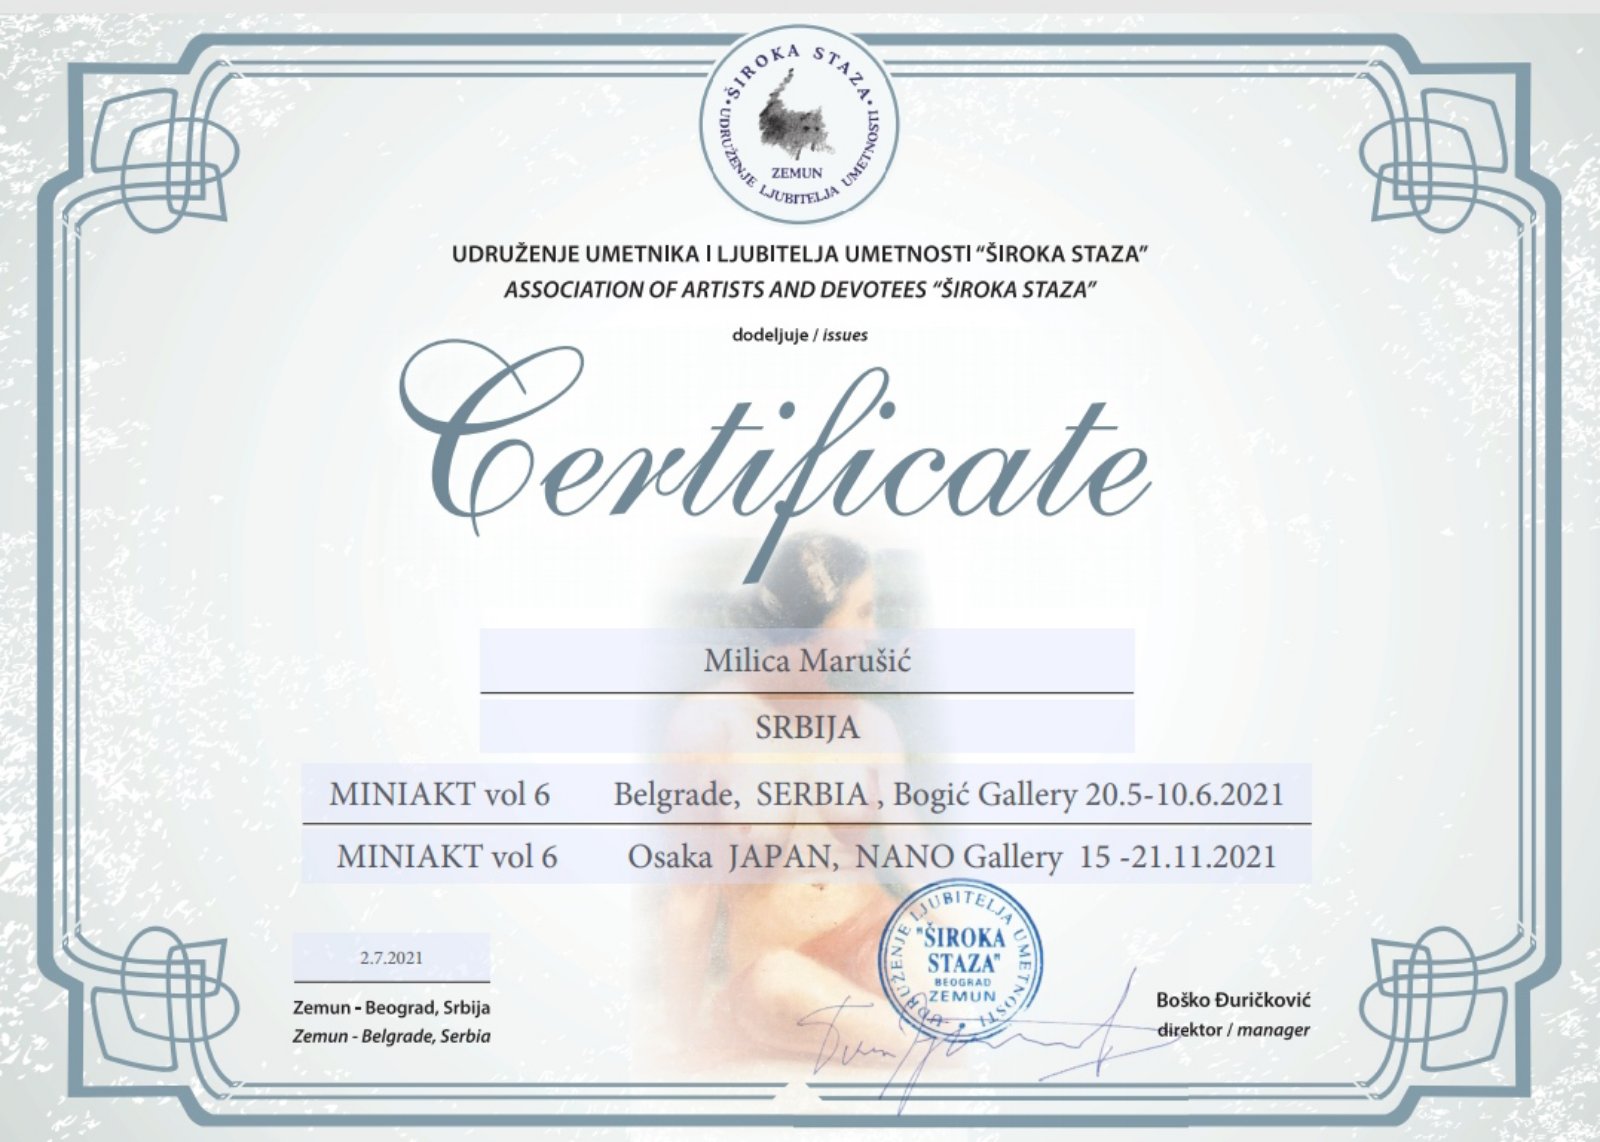 Japan - Mini Akt vol 6 - Certificate - Milica MARUŠIĆ